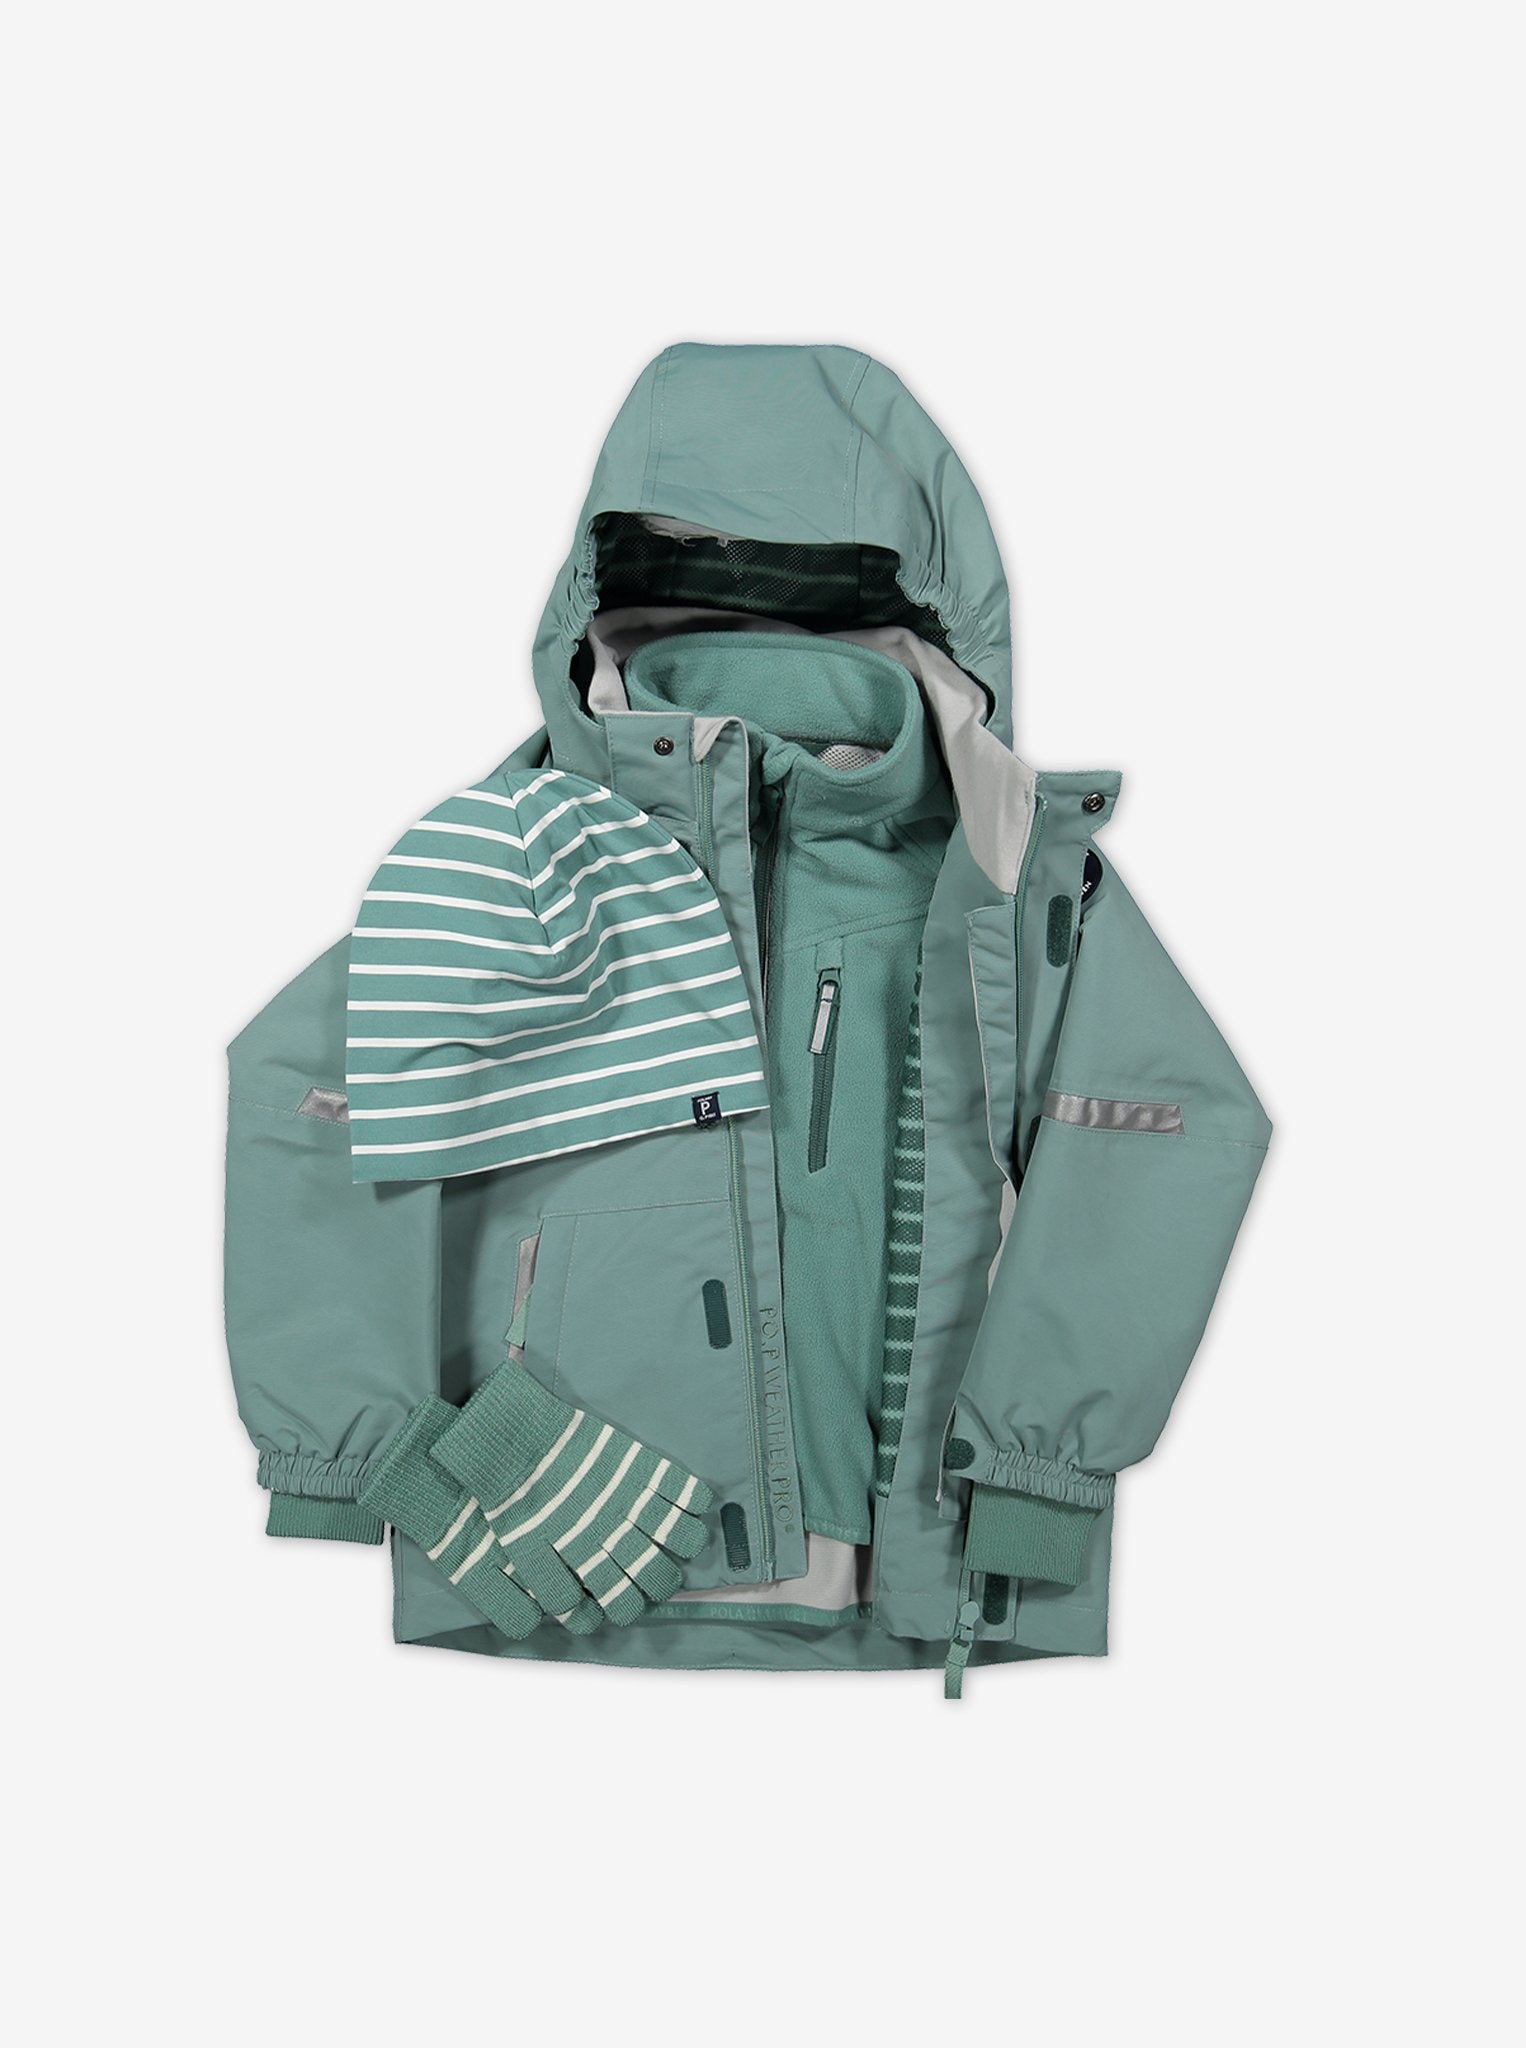 A kids winter outerwear set which includes a green waterproof jacket, waterproof fleece jacket, kids gloves and wool beanie.